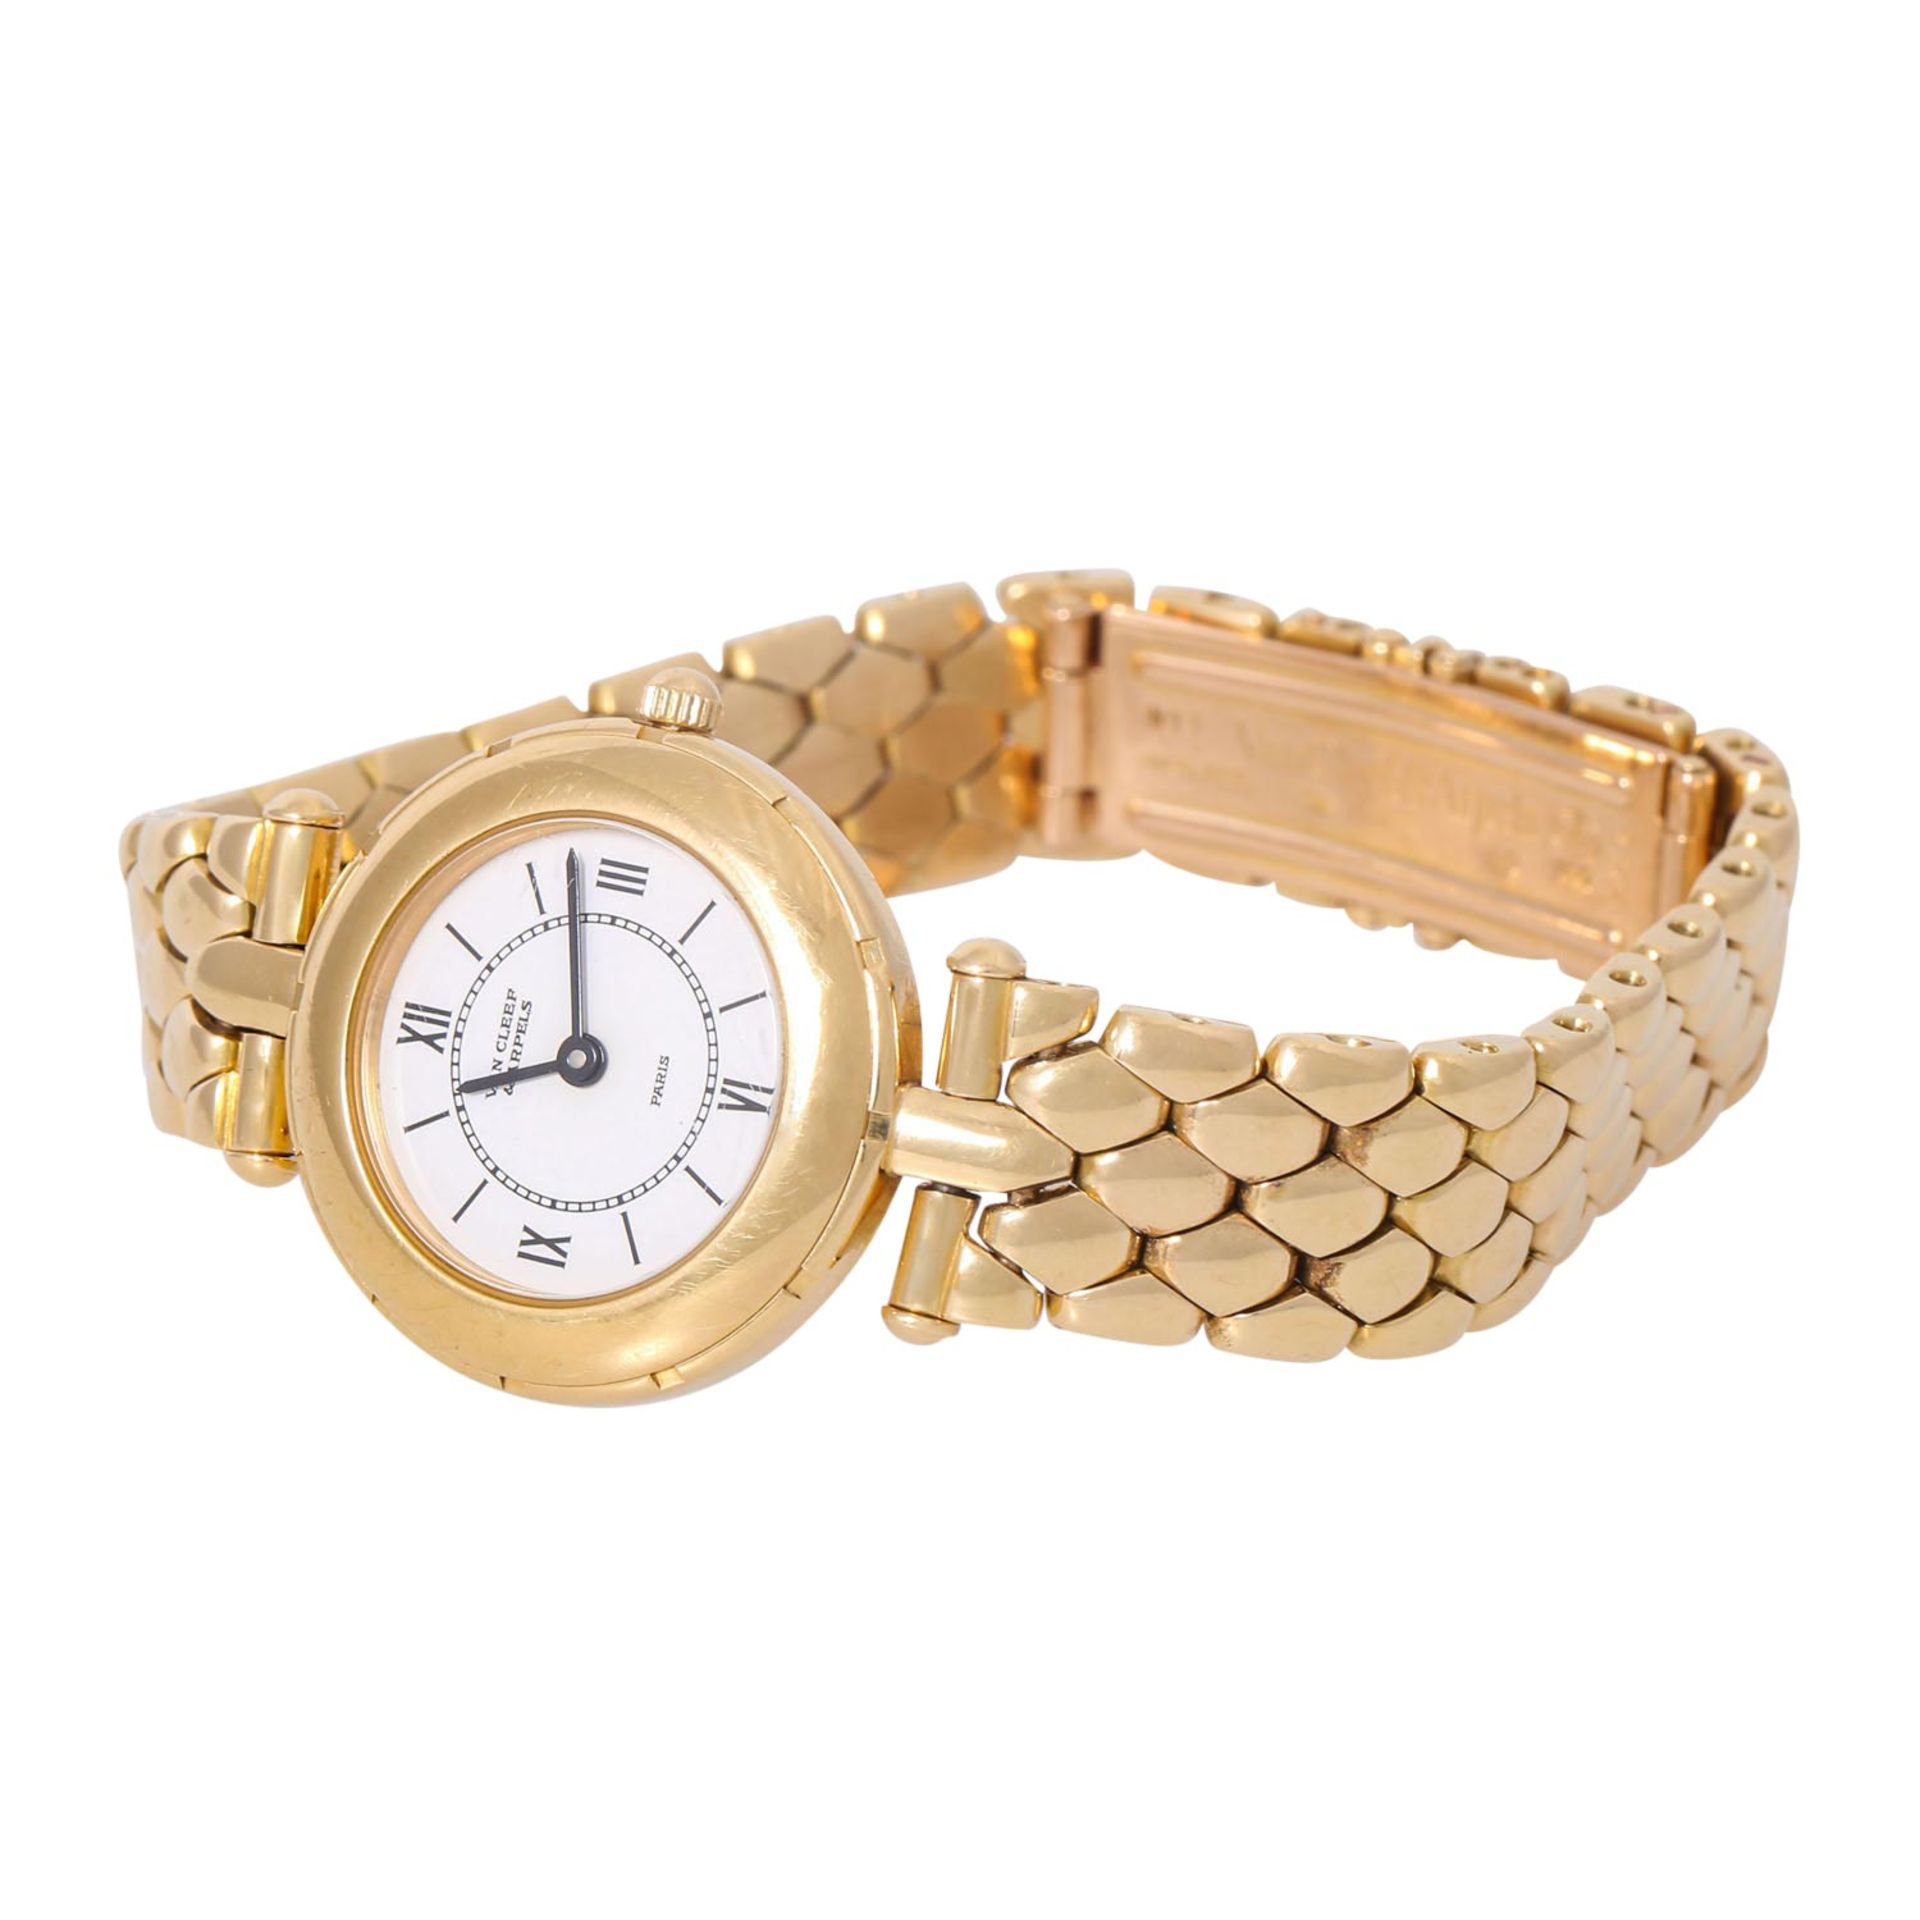 VAN CLEEF & ARPELS hochfeine Damen Armbanduhr, Ref. 13607. Ca. 1990er Jahre. - Bild 6 aus 8